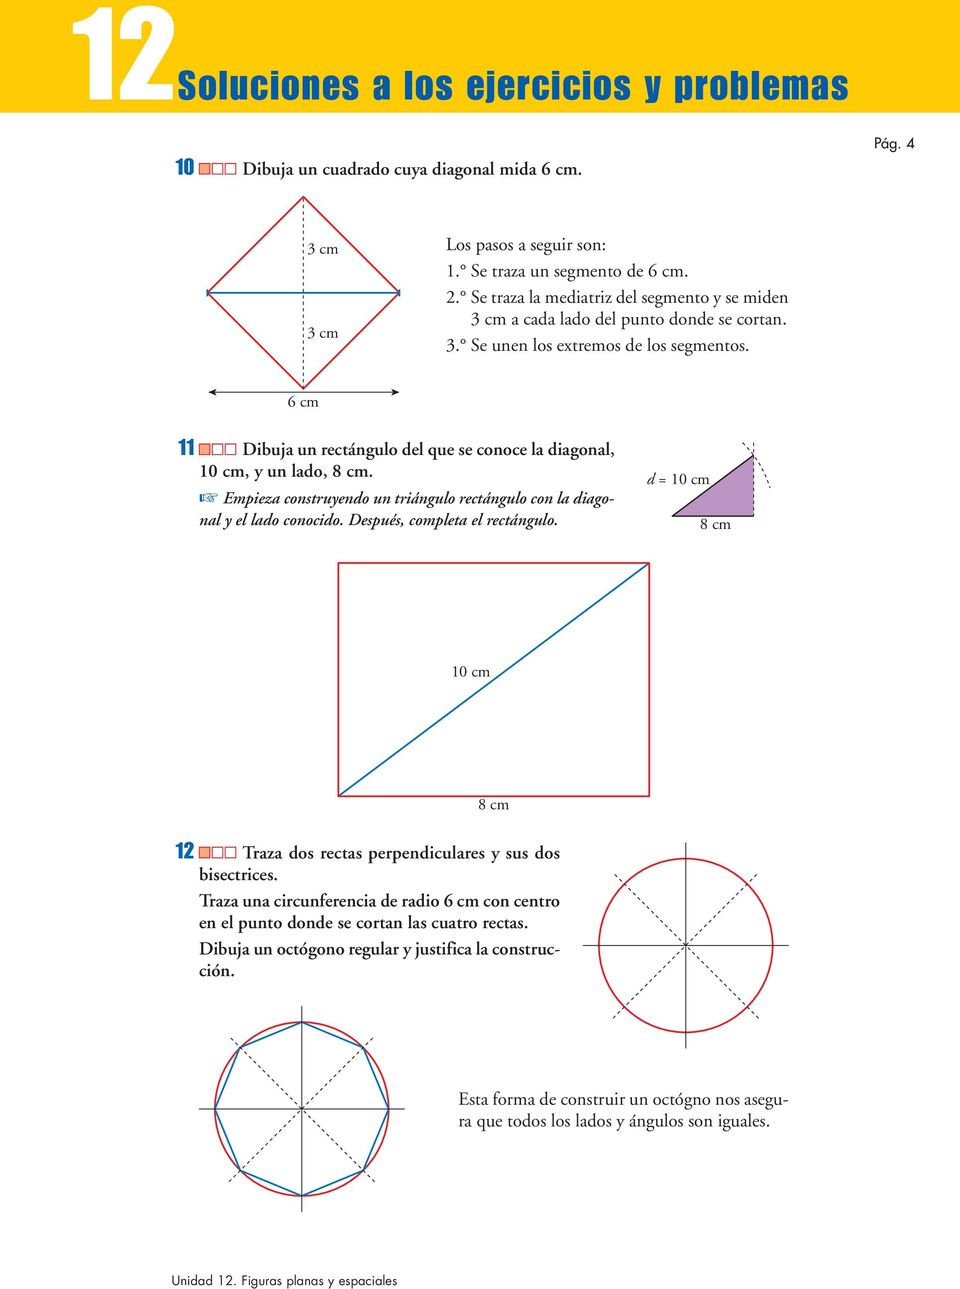 6 cm 11 Dibuja un rectángulo del que se conoce la diagonal, 10 cm, y un lado, 8 cm. Empieza construyendo un triángulo rectángulo con la diagonal y el lado conocido.